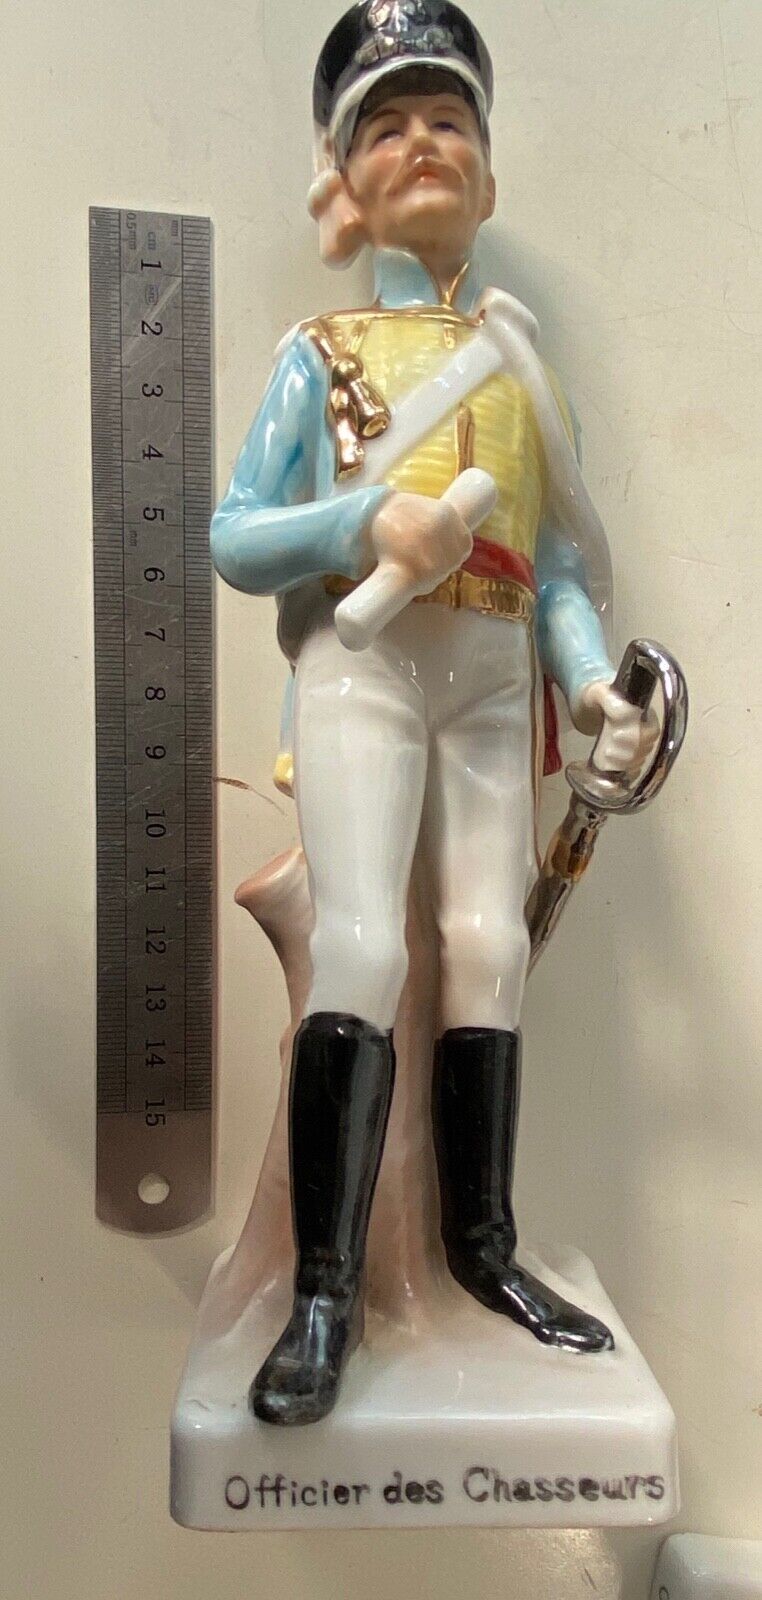 Vintage Porcelain Officier des Chasseurs figurine in excellent condition.